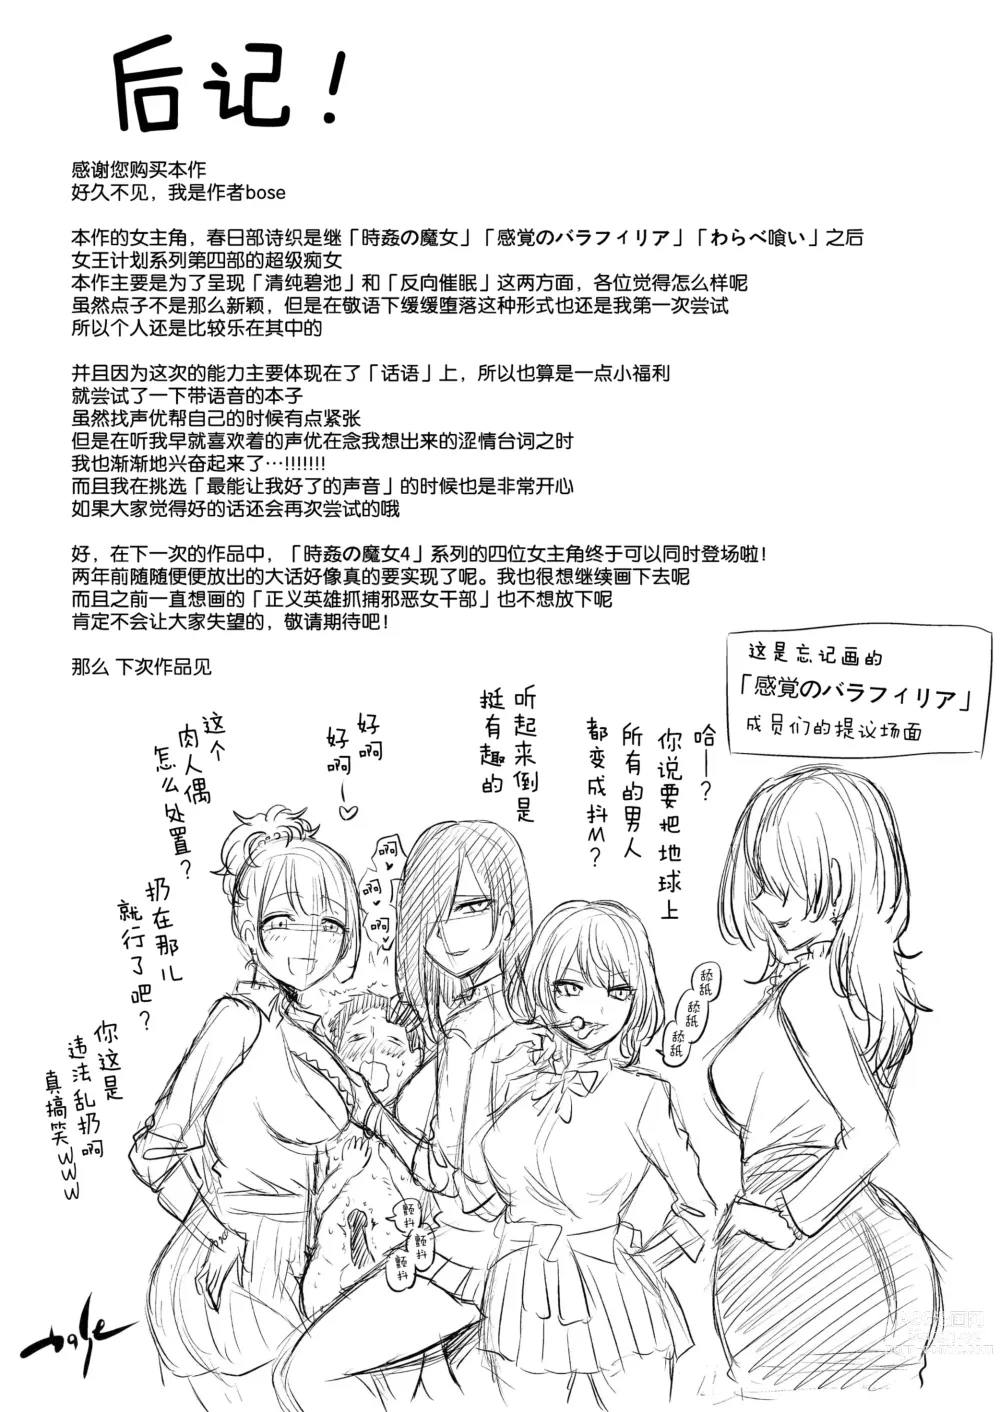 Page 33 of doujinshi Sasayaki no Inma ~Seisokei Bitch na Kouhai Joshidaisei ni Yoru Jinkaku Hakai Saimin~